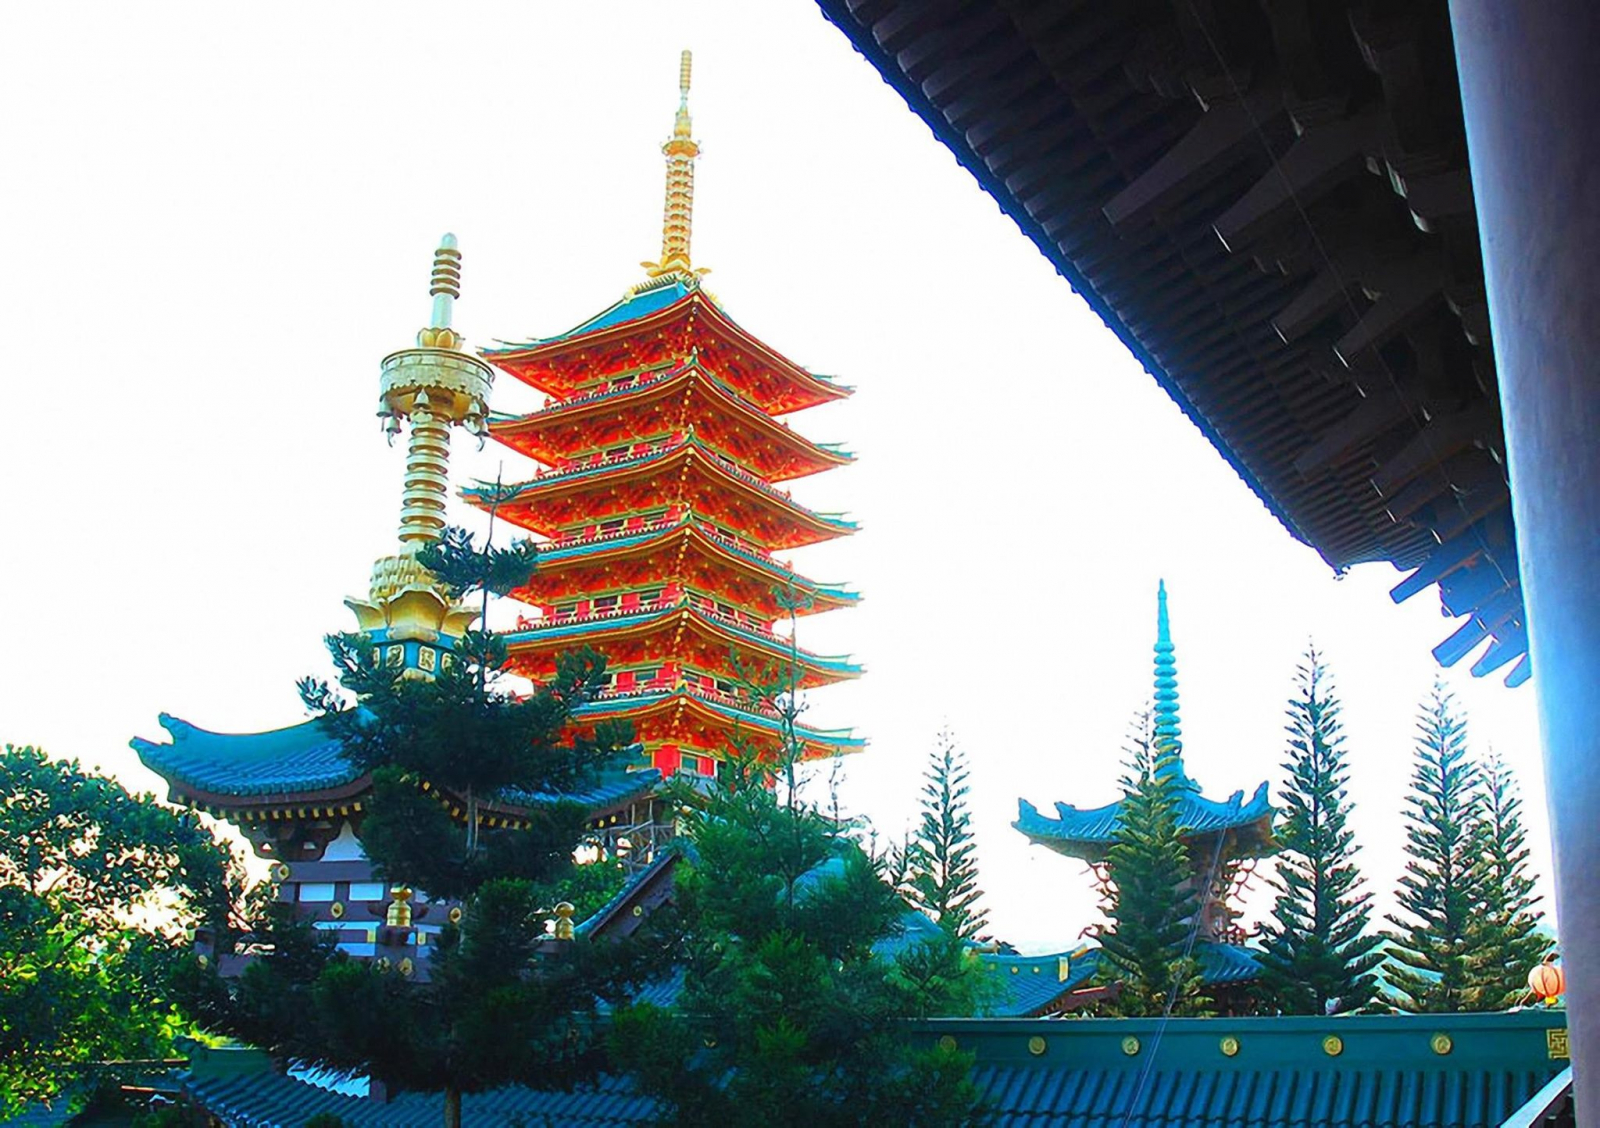 Chùa Minh Thành – Ngôi chùa mang phong cách Nhật Bản